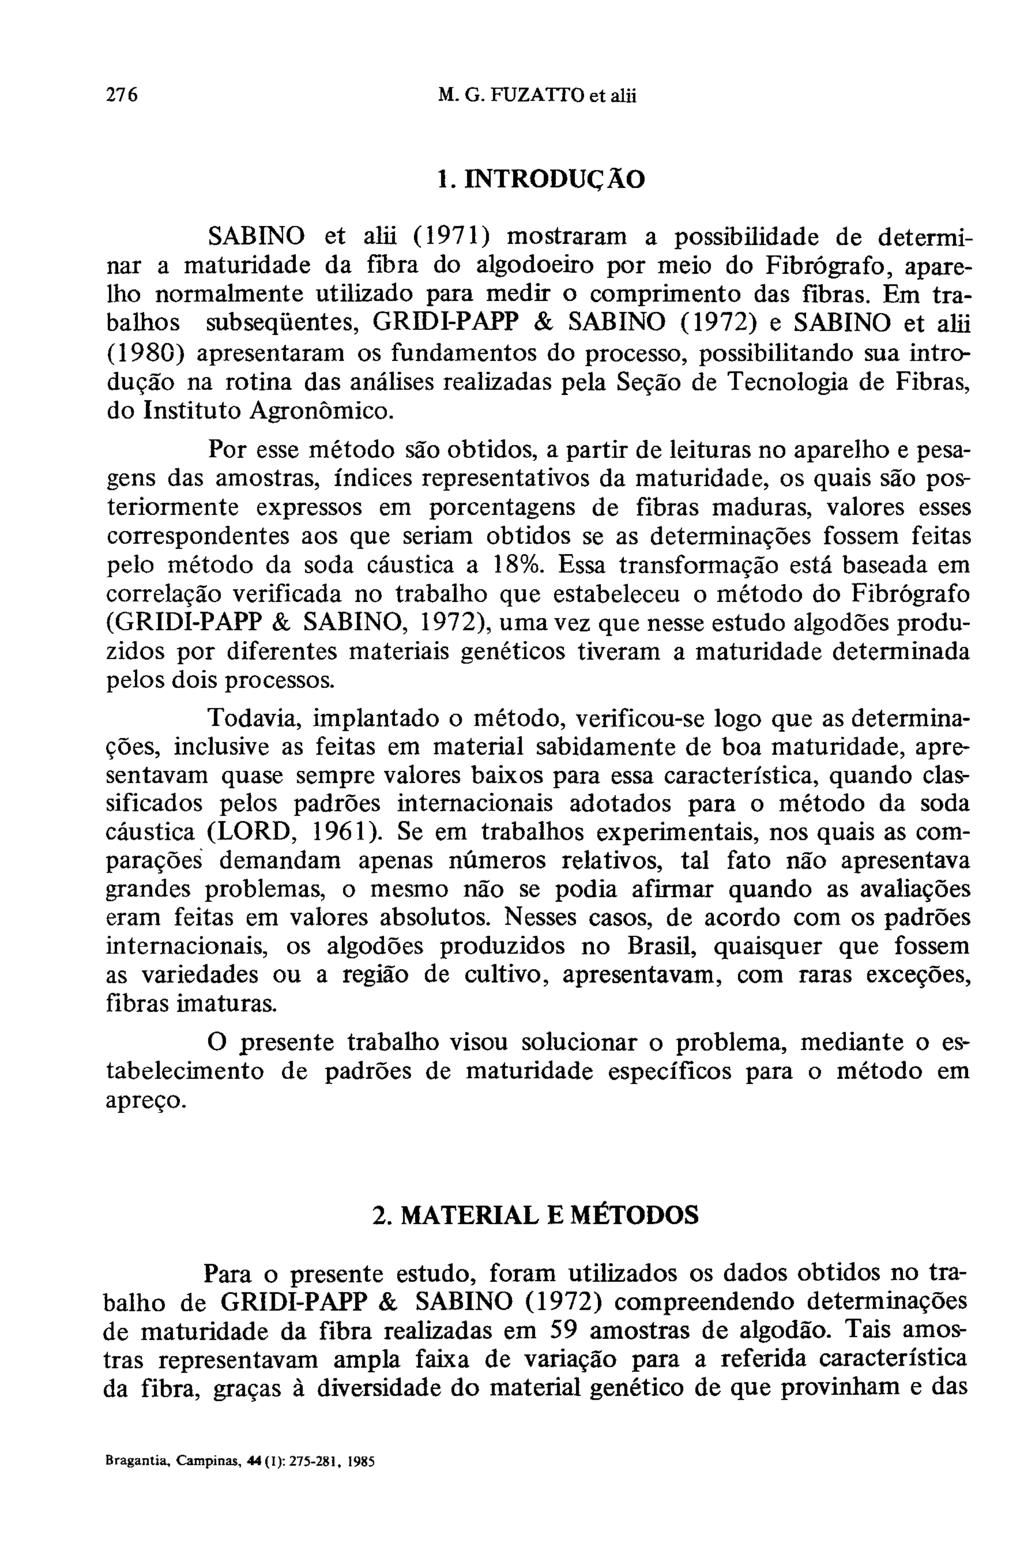 1. INTRODUÇÃO SABINO et alii (1971) mostraram a possibilidade de determinar a maturidade da fibra do algodoeiro por meio do Fibrógrafo, aparelho normalmente utilizado para medir o comprimento das